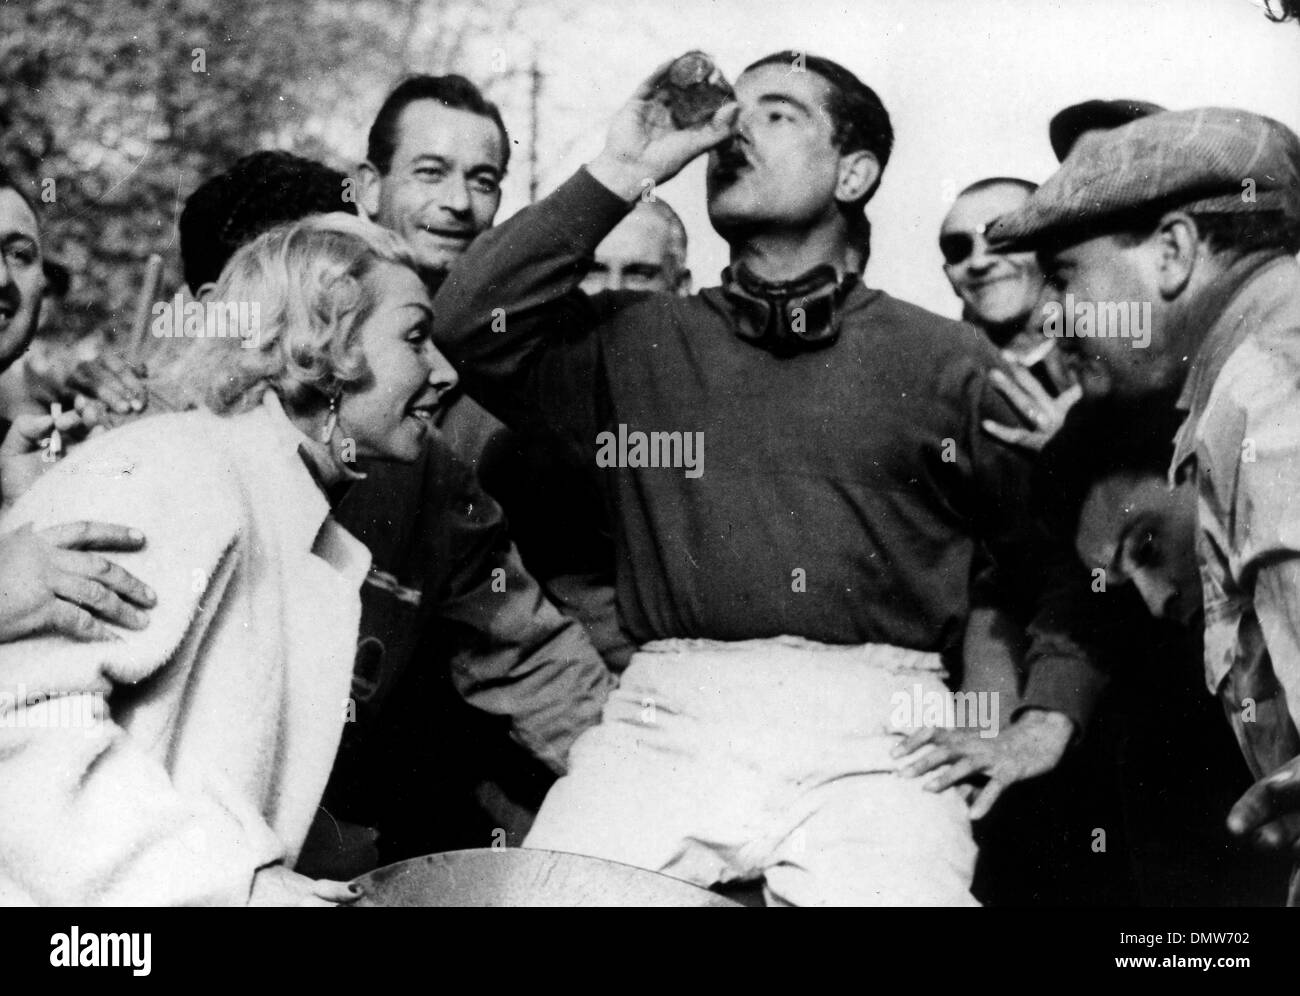 12. April 1955 - Pau, Frankreich - Rennfahrer nimmt JEAN BEHRA ein erfrischendes Getränk nach dem Gewinn des Grand-Prix-Rennen in Pau, ist mit ihm zu feiern seine Frau. (Kredit-Bild: © KEYSTONE Bilder USA/ZUMAPRESS.com) Stockfoto